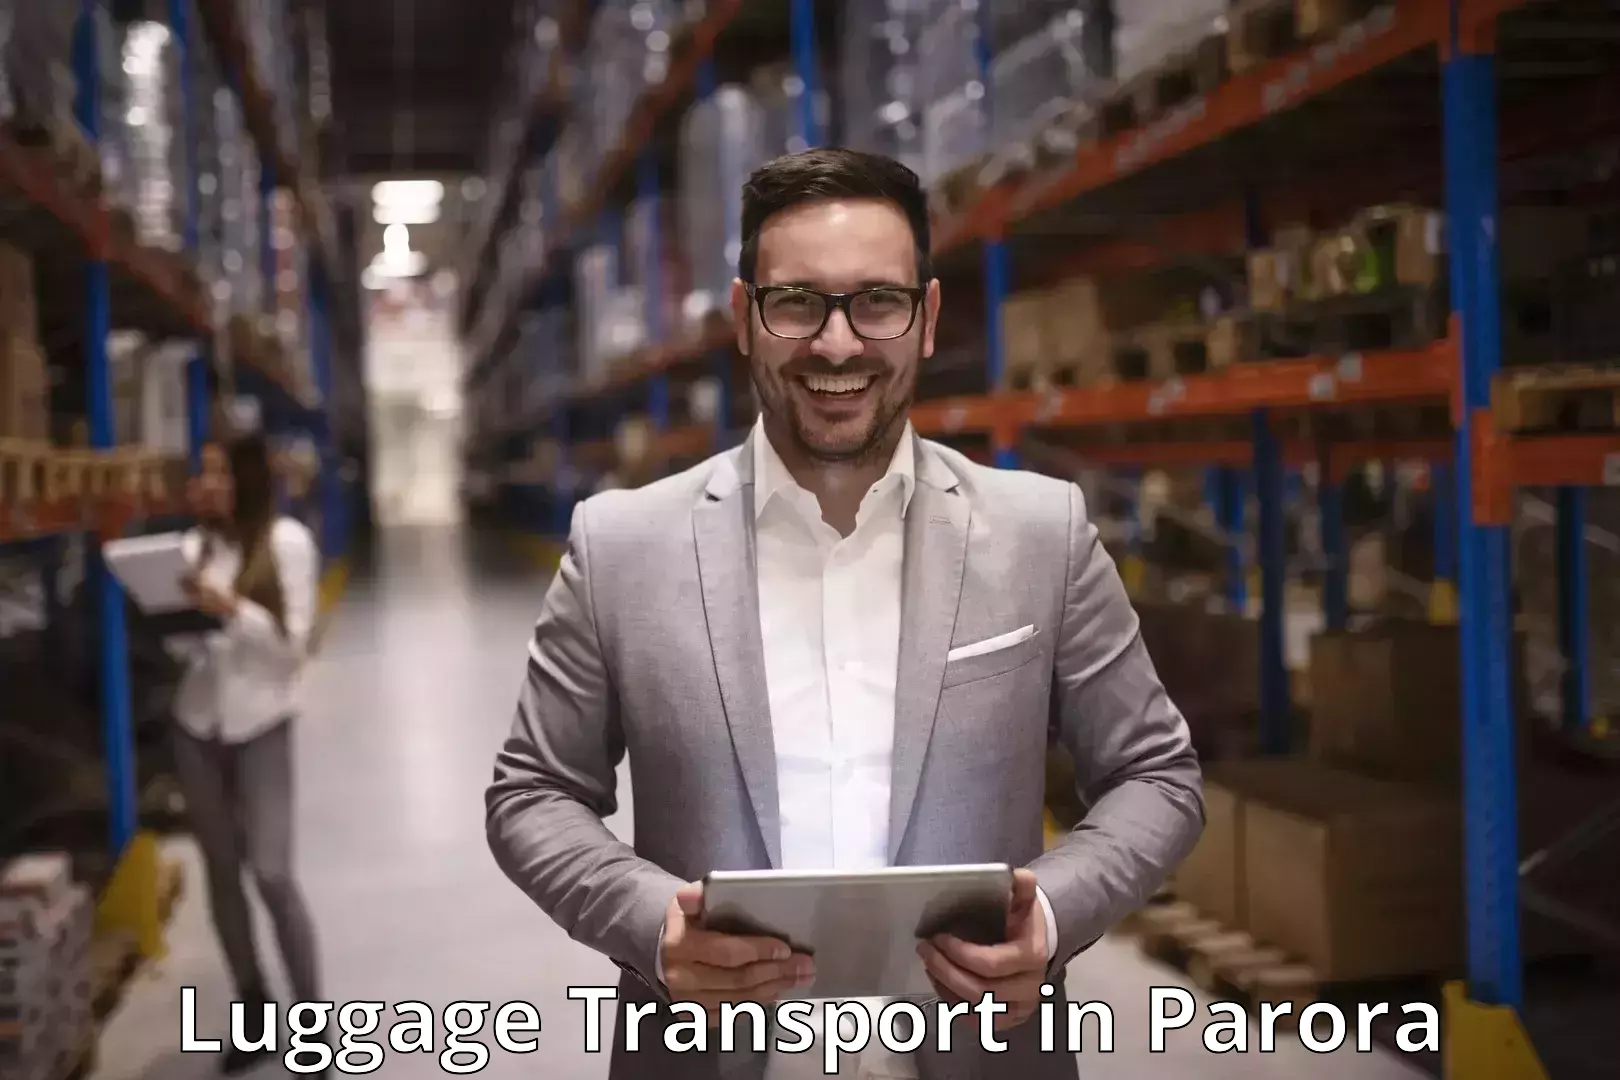 Luggage transport consultancy in Parora